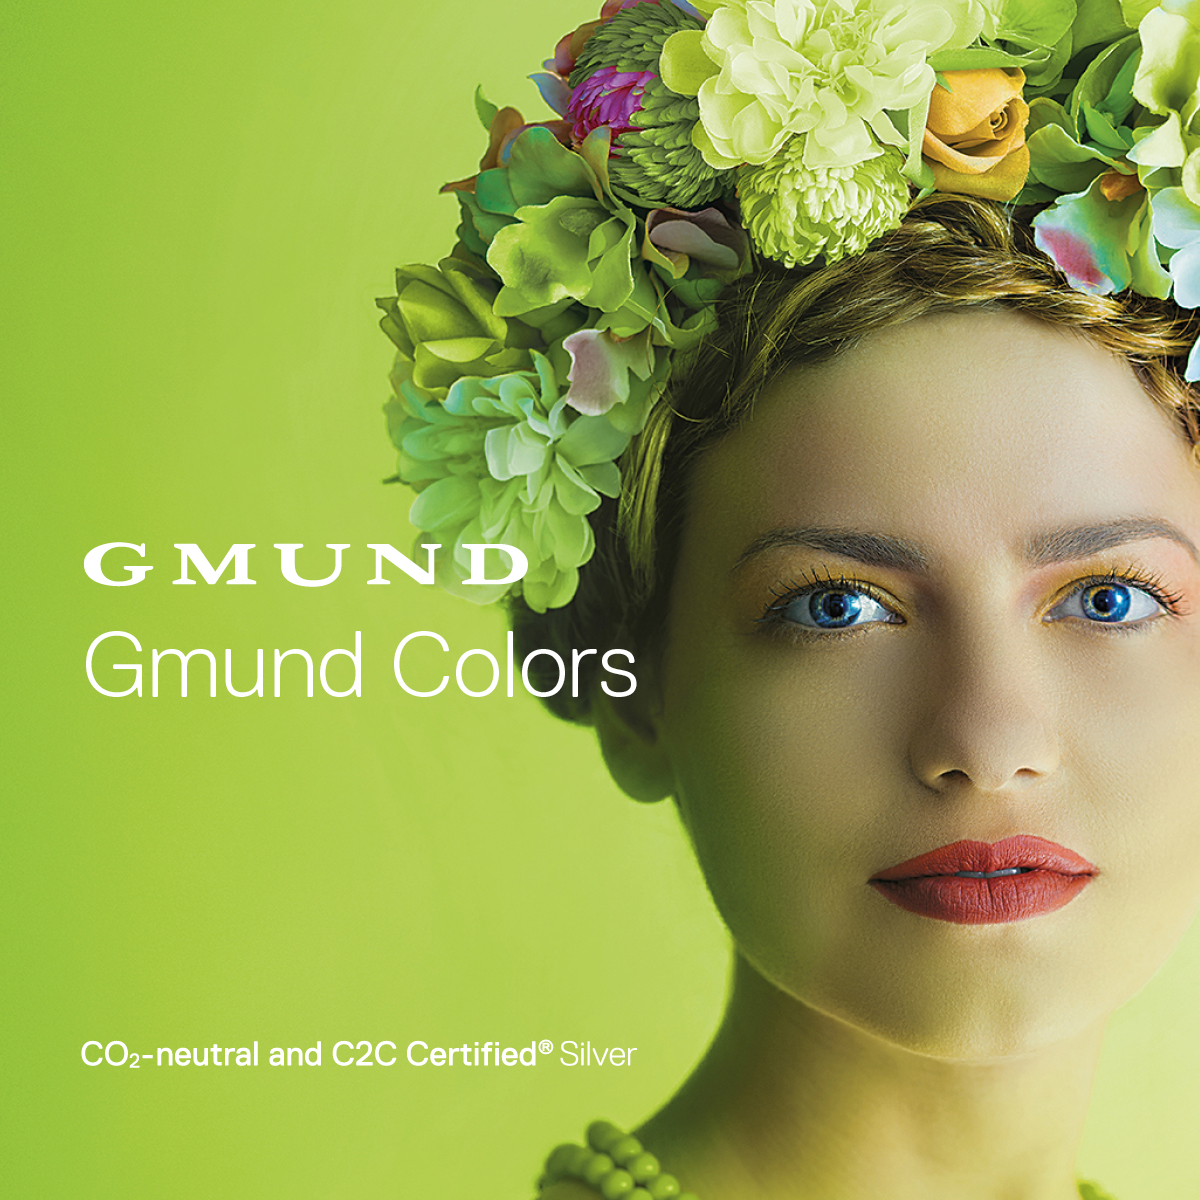 Broschüre Gmund Colors Nachhaltigkeit englisch